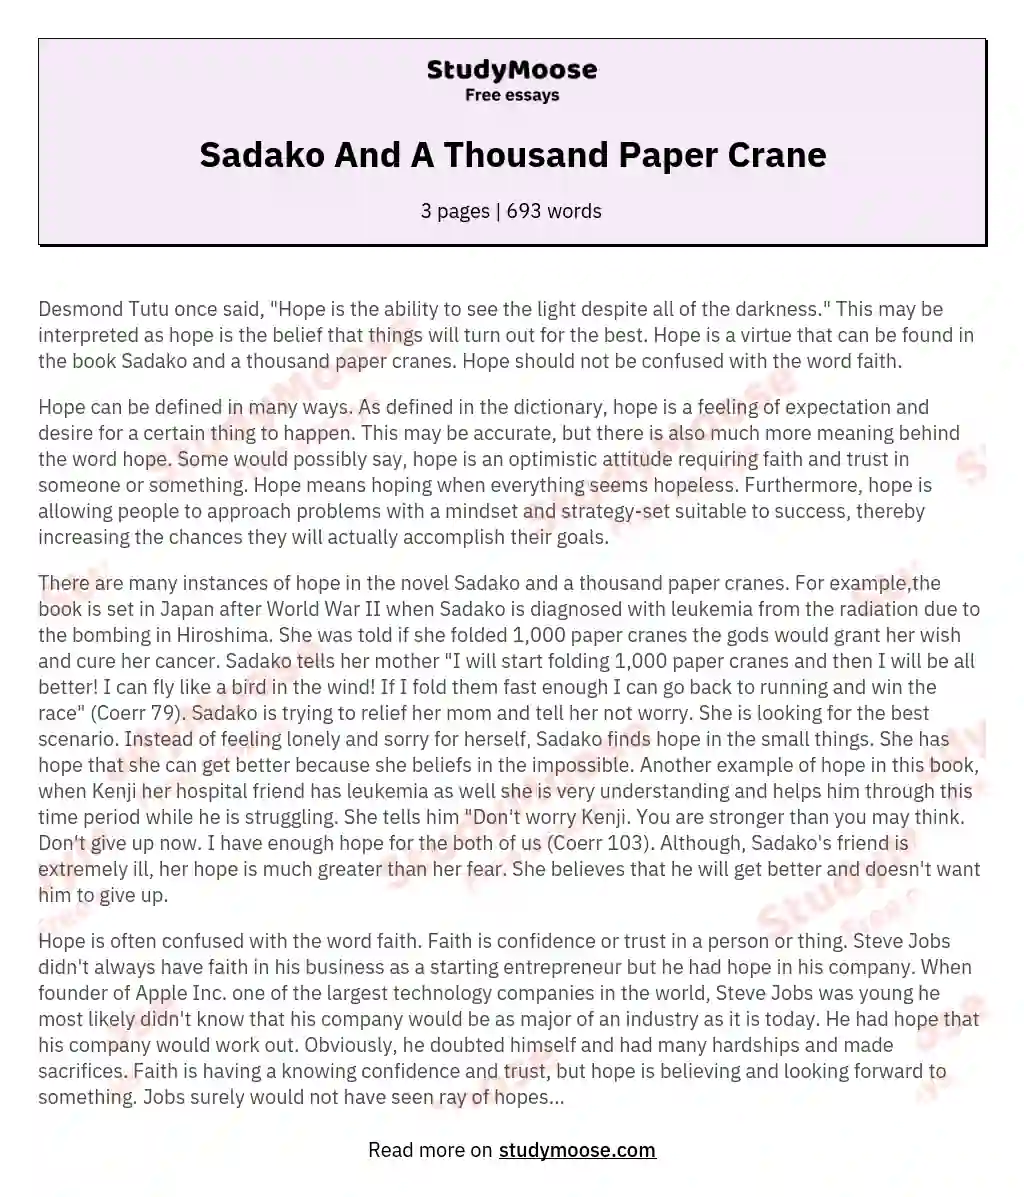 Sadako And A Thousand Paper Crane essay